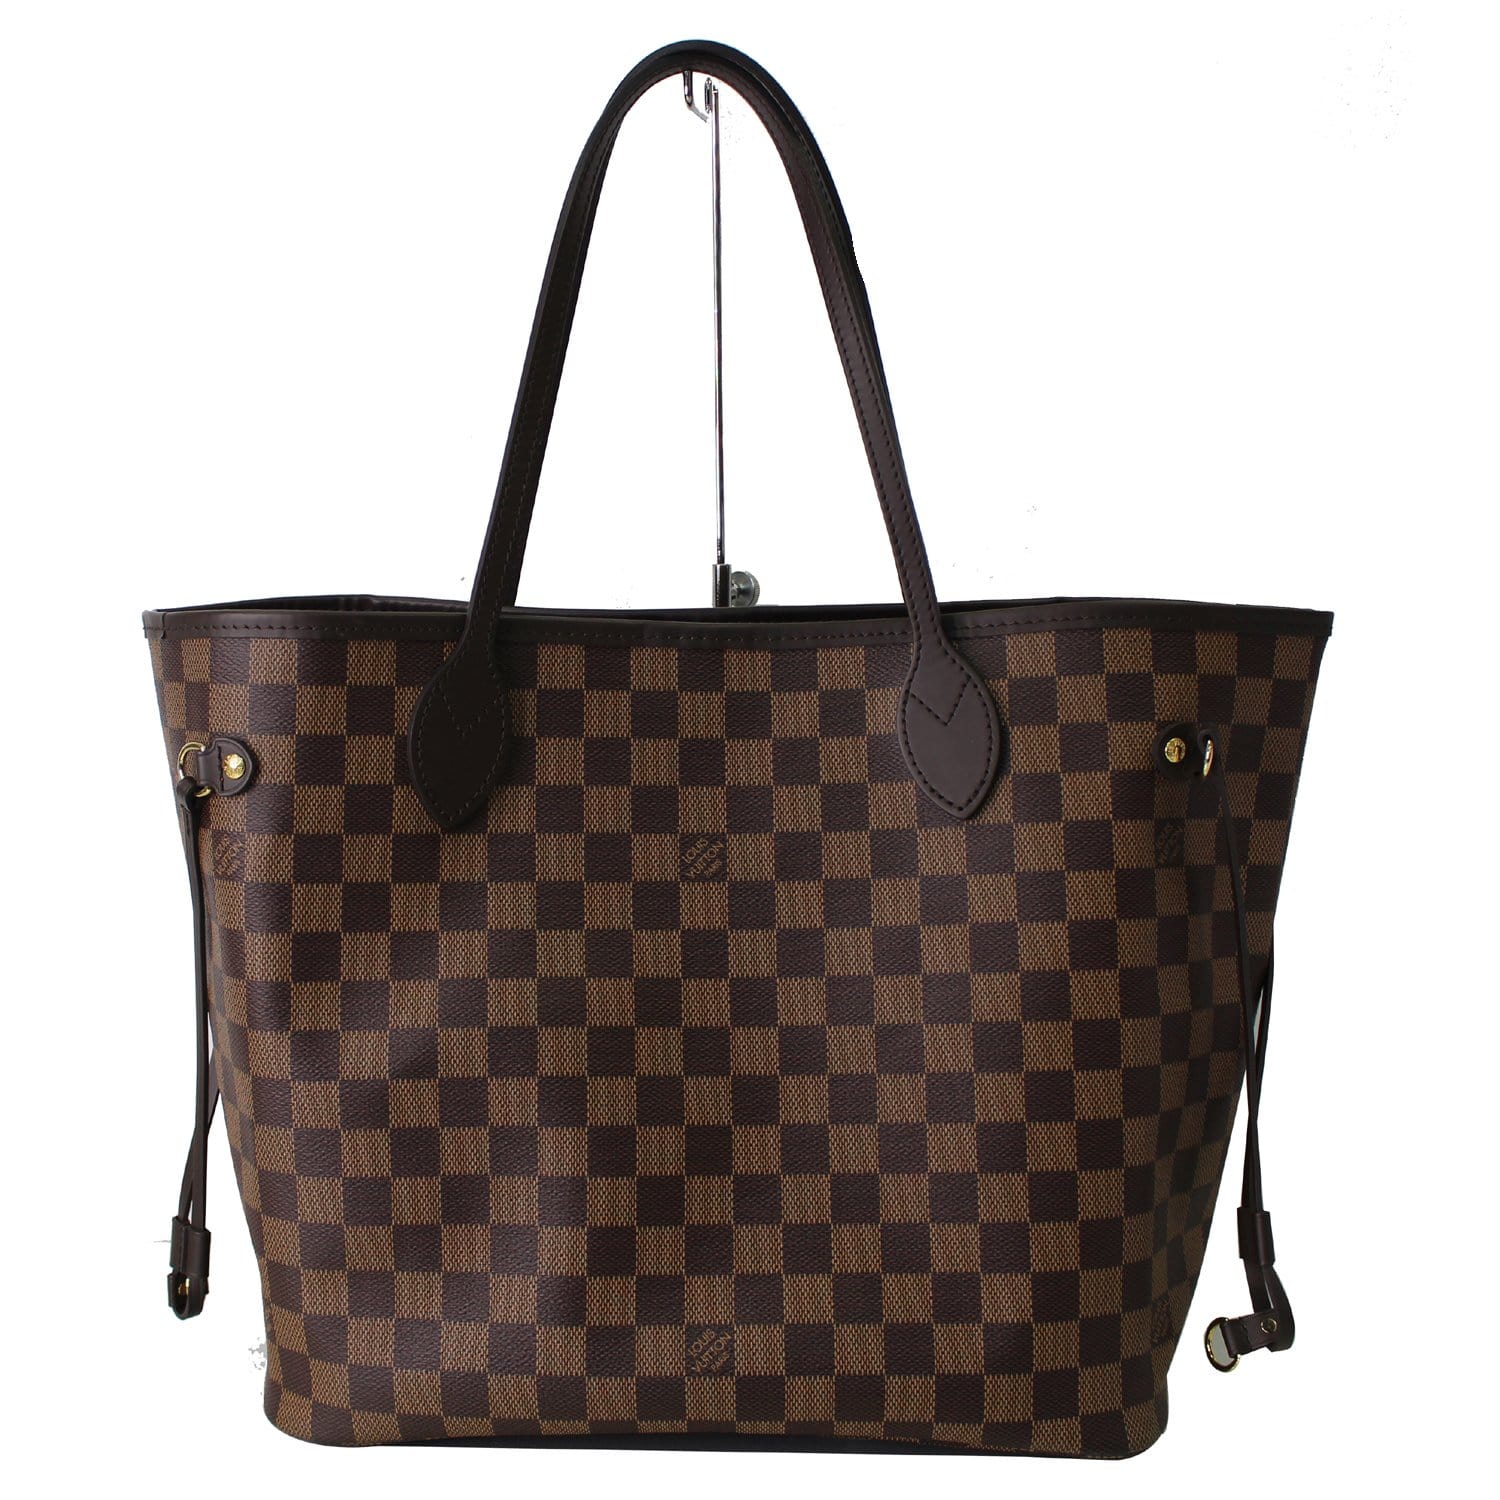 Louis Vuitton, Bags, Authentic Louis Vuitton Neverfull Mm Tote Shoulder  Bag Damier Ebene W Dust Bag